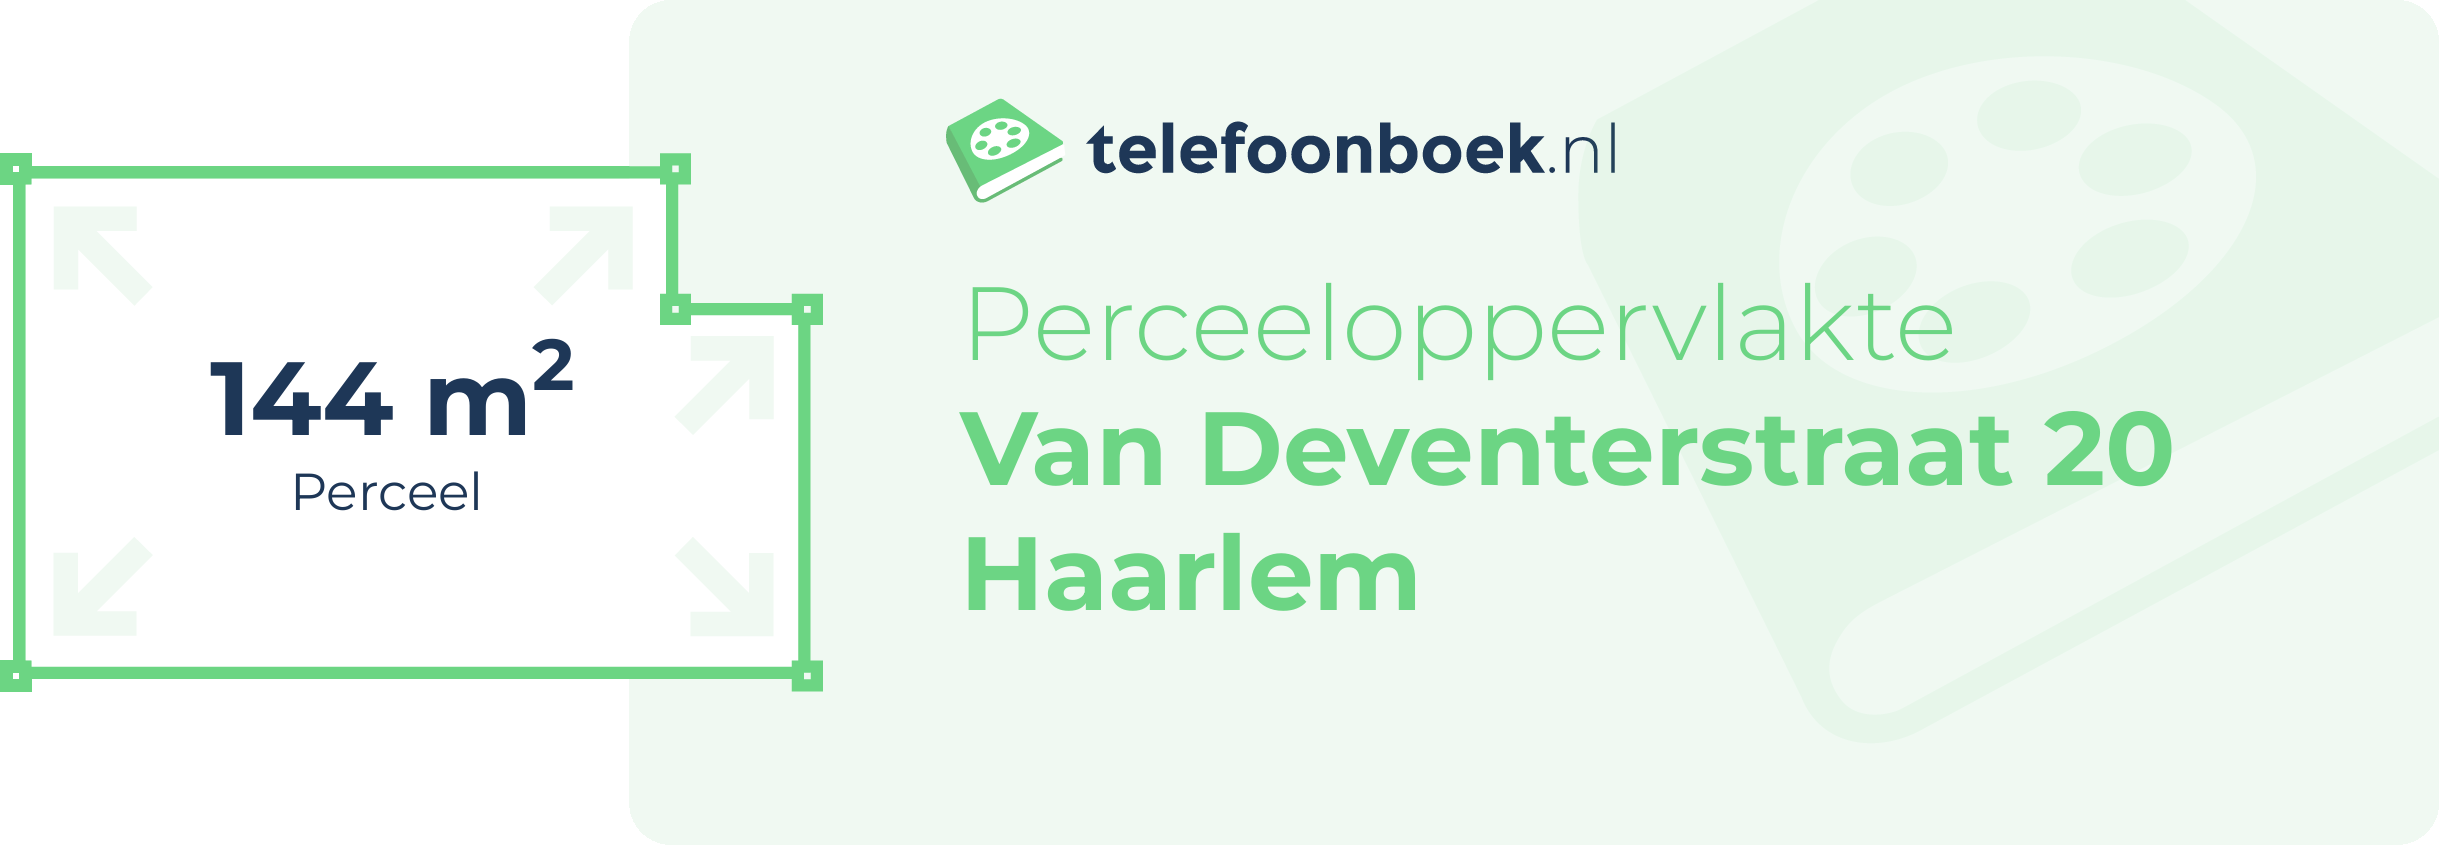 Perceeloppervlakte Van Deventerstraat 20 Haarlem